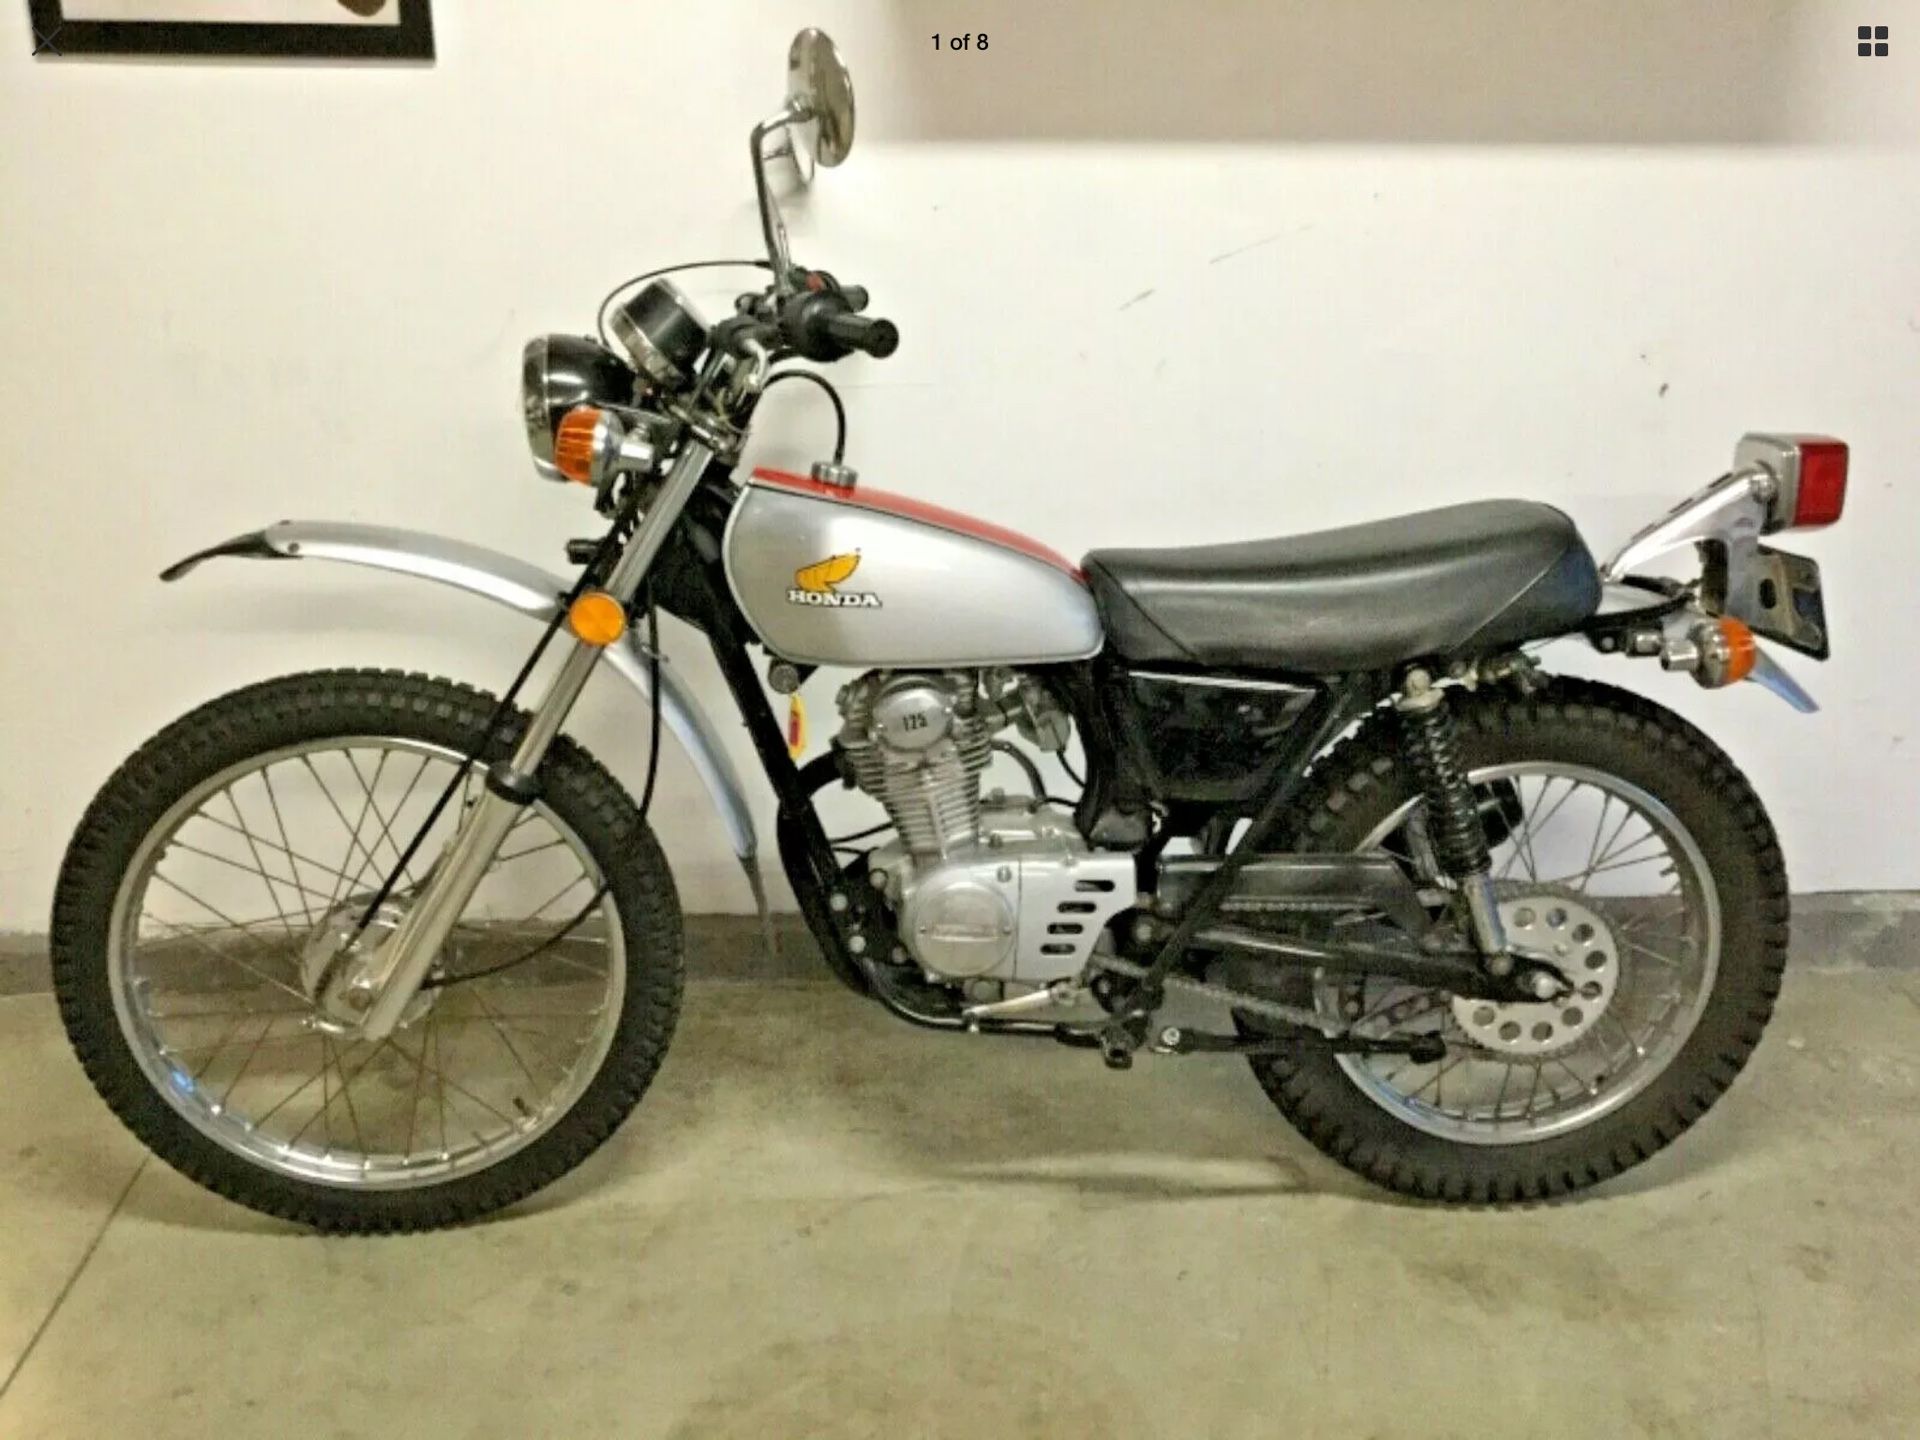 1974 Honda XL125 Vintage Motorcycle - Dana Point